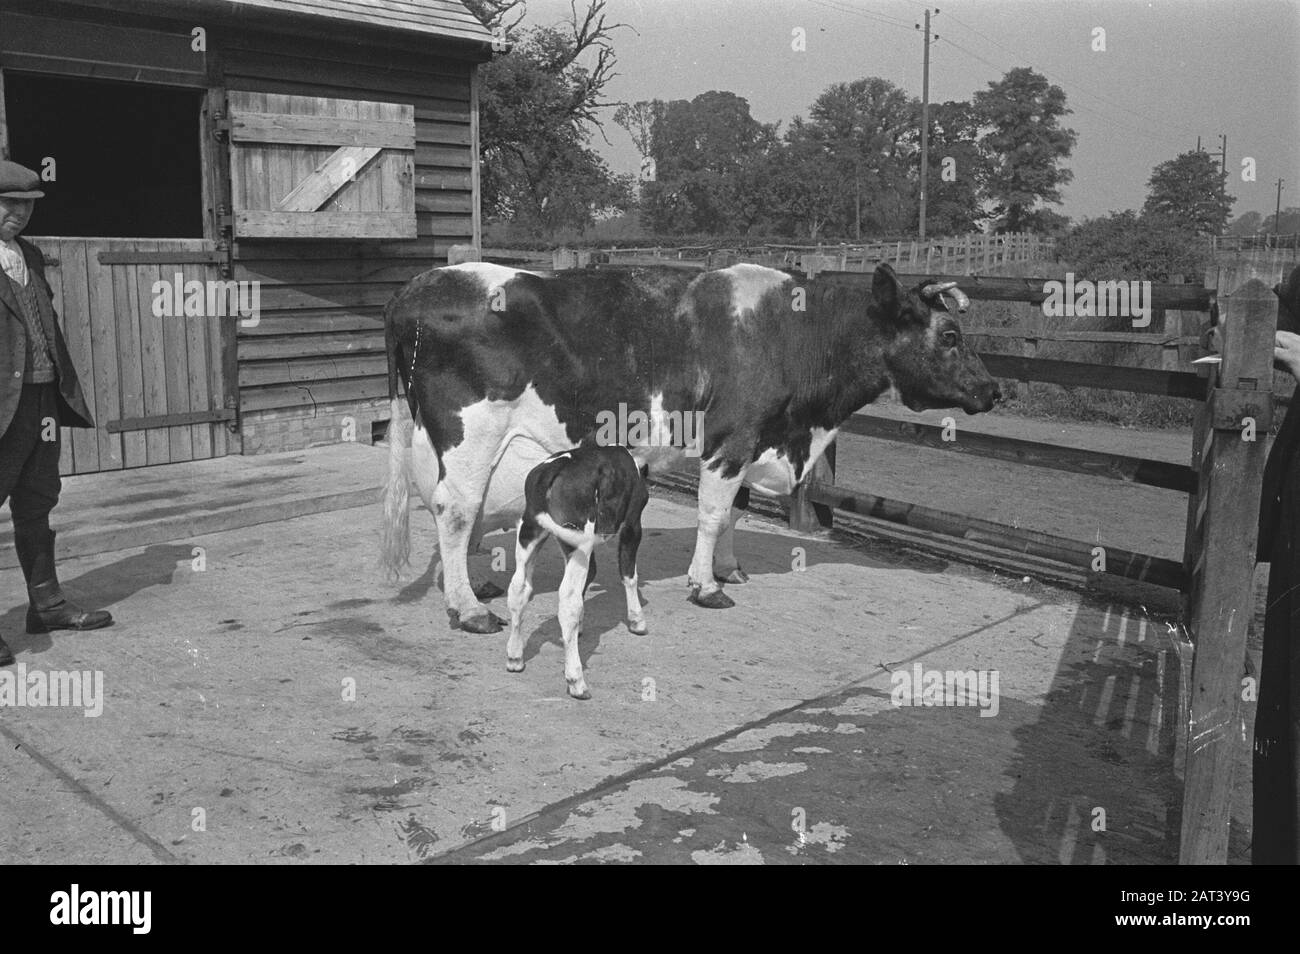 1938 gab es in Holland etwa 1,5 Millionen Milchkühe, die durchschnittlich 1000 Gallonen Milch pro P.a. Mit einem Fettgehalt von 3,56 produzierten. Viele Meisterkühe und Bullen wurden exportiert, um neue Herden in mehreren Ländern zu gründen. Die beiden ältesten in England ansässigen Herden sind die Terling- und die Lavenham-Herde, die mehr als 1500 Kopf an Lord Ralleighs Farmen in Essex zählen. Diese Herden - attestiert und tuberkulin getestet - haben viele Champions enthalten und erste Preise bei Milchmessen bereits im ganzen Land gewonnen. [Bildunterschrift verloren. Mutterkuh mit Kalb] Datum: Juni 1943 Ort: Essex, Großbritannien Stichwort Stockfoto